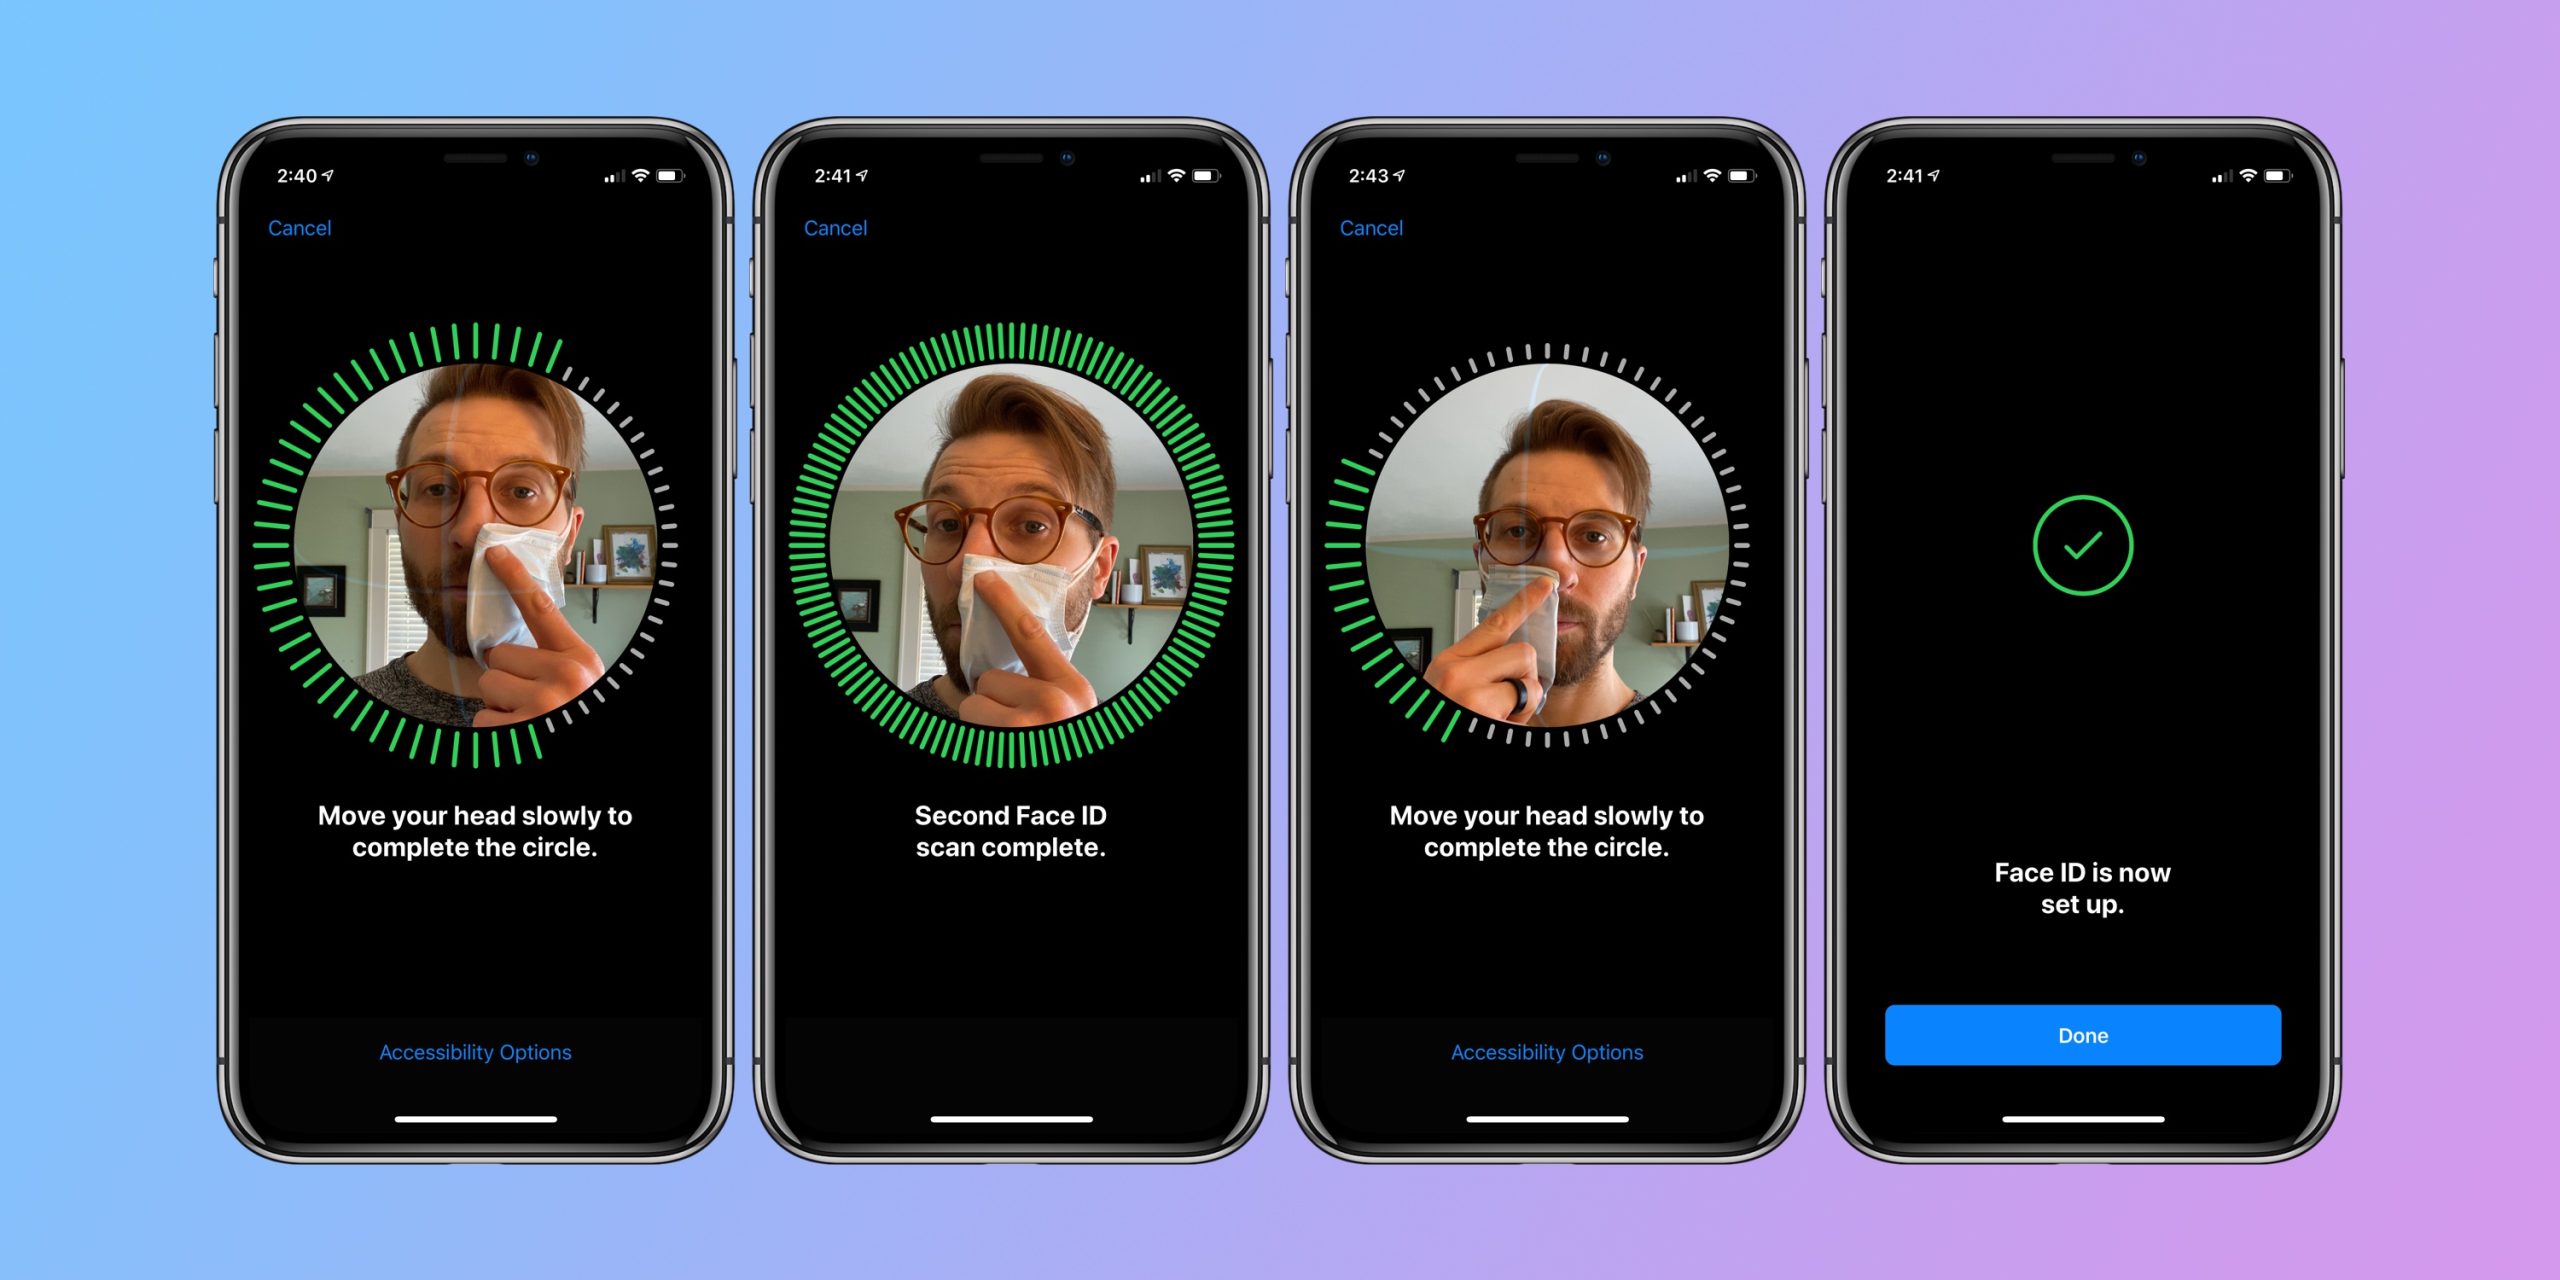 آبل ستتمكن من إصلاح iPhone Face ID بدلاً من استبدال الجهاز بالكامل